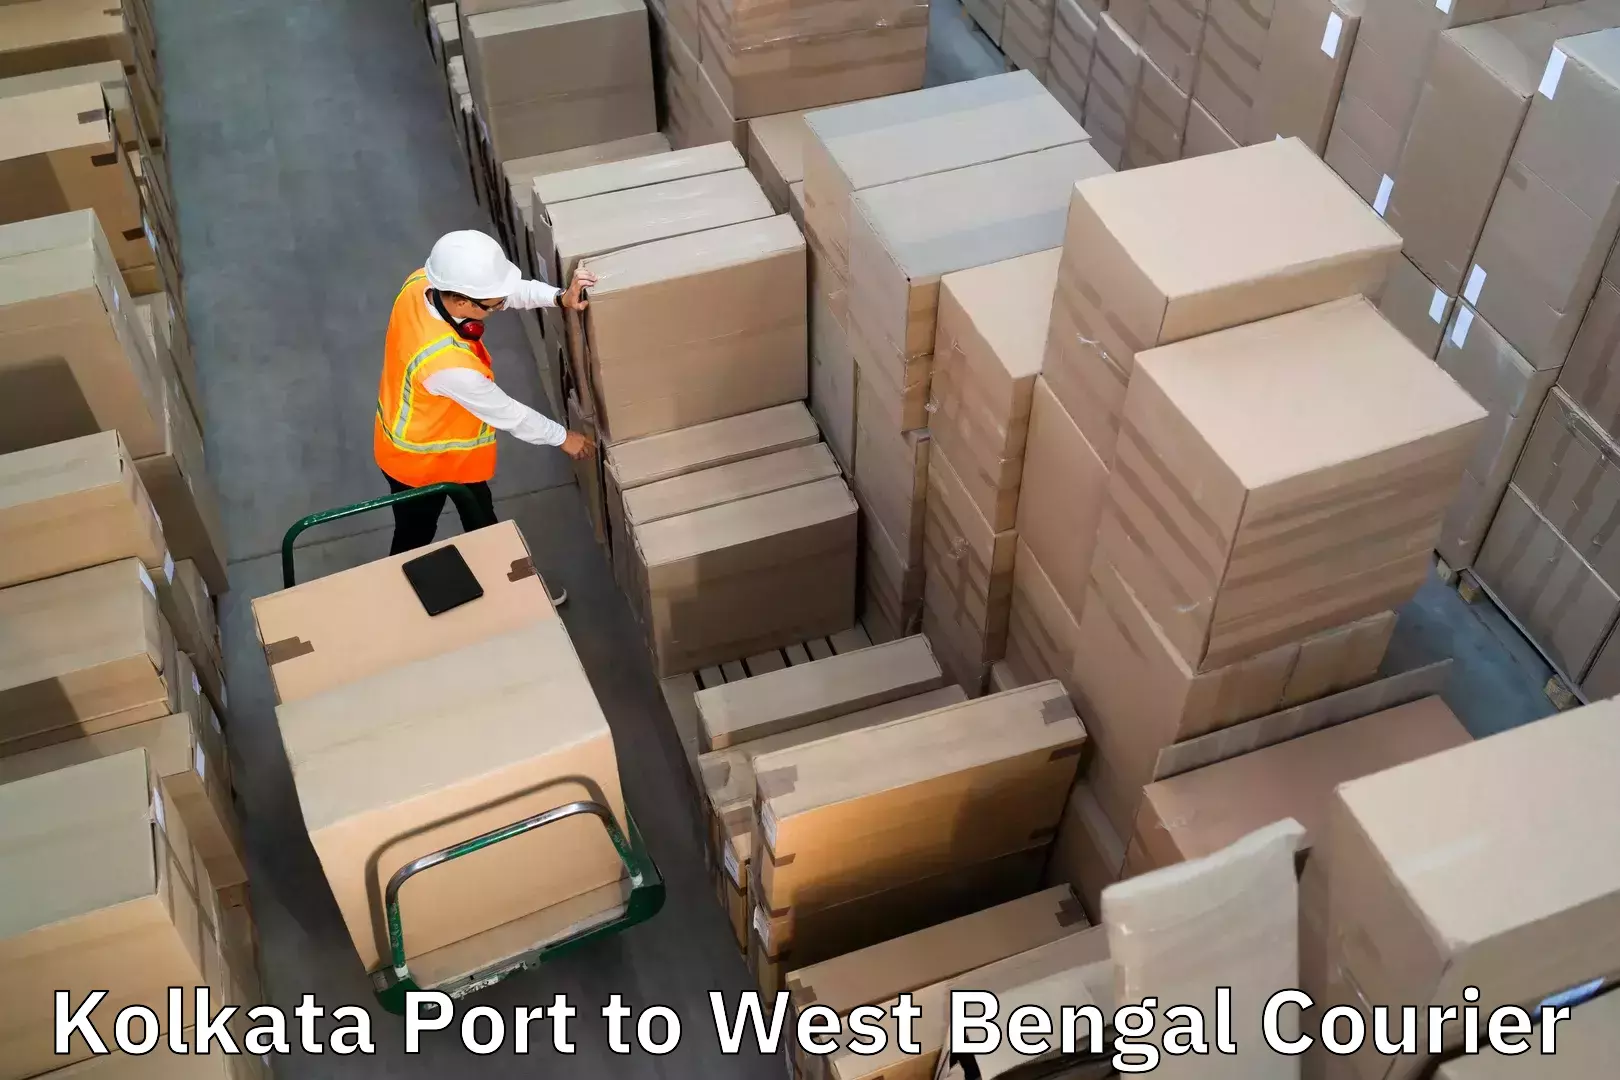 Luggage transport consultancy in Kolkata Port to Bankura